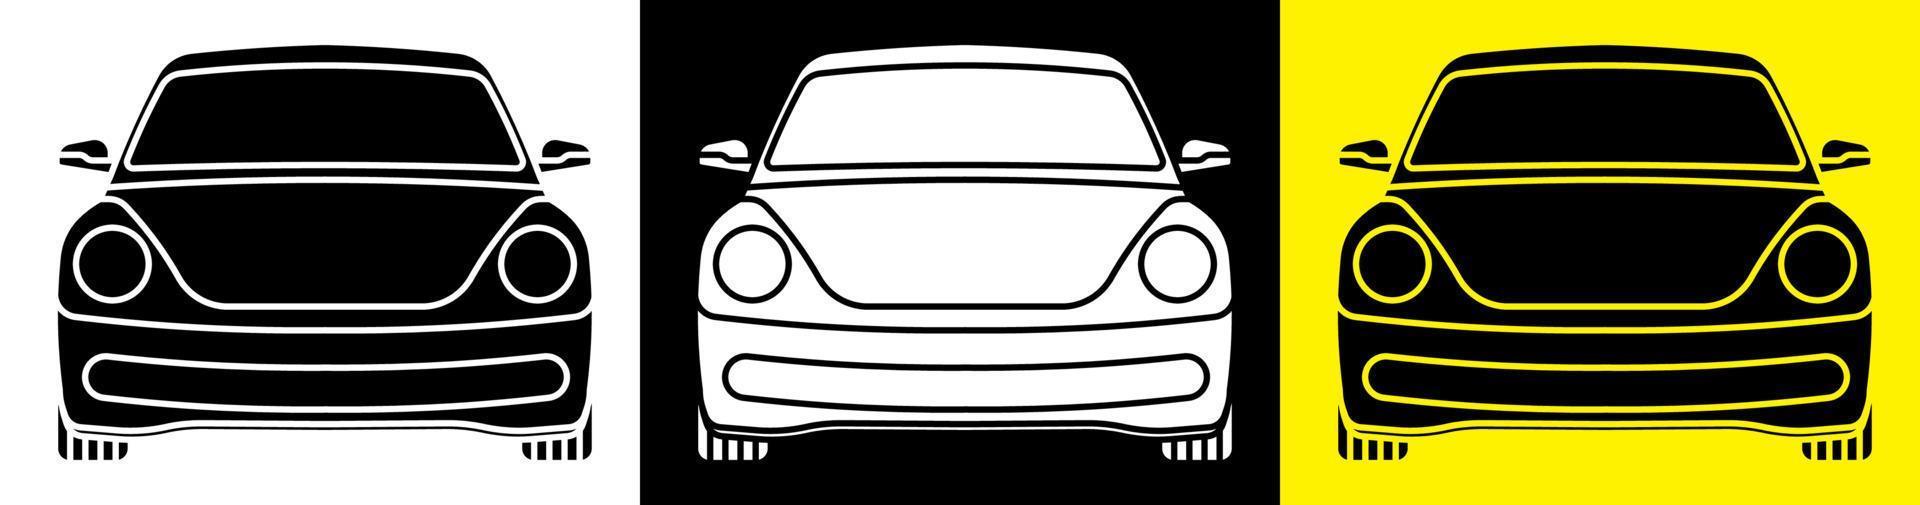 ícone de carro em estilo simples. condução do carro, manutenção em um centro de serviço. segurança na estrada. vetor